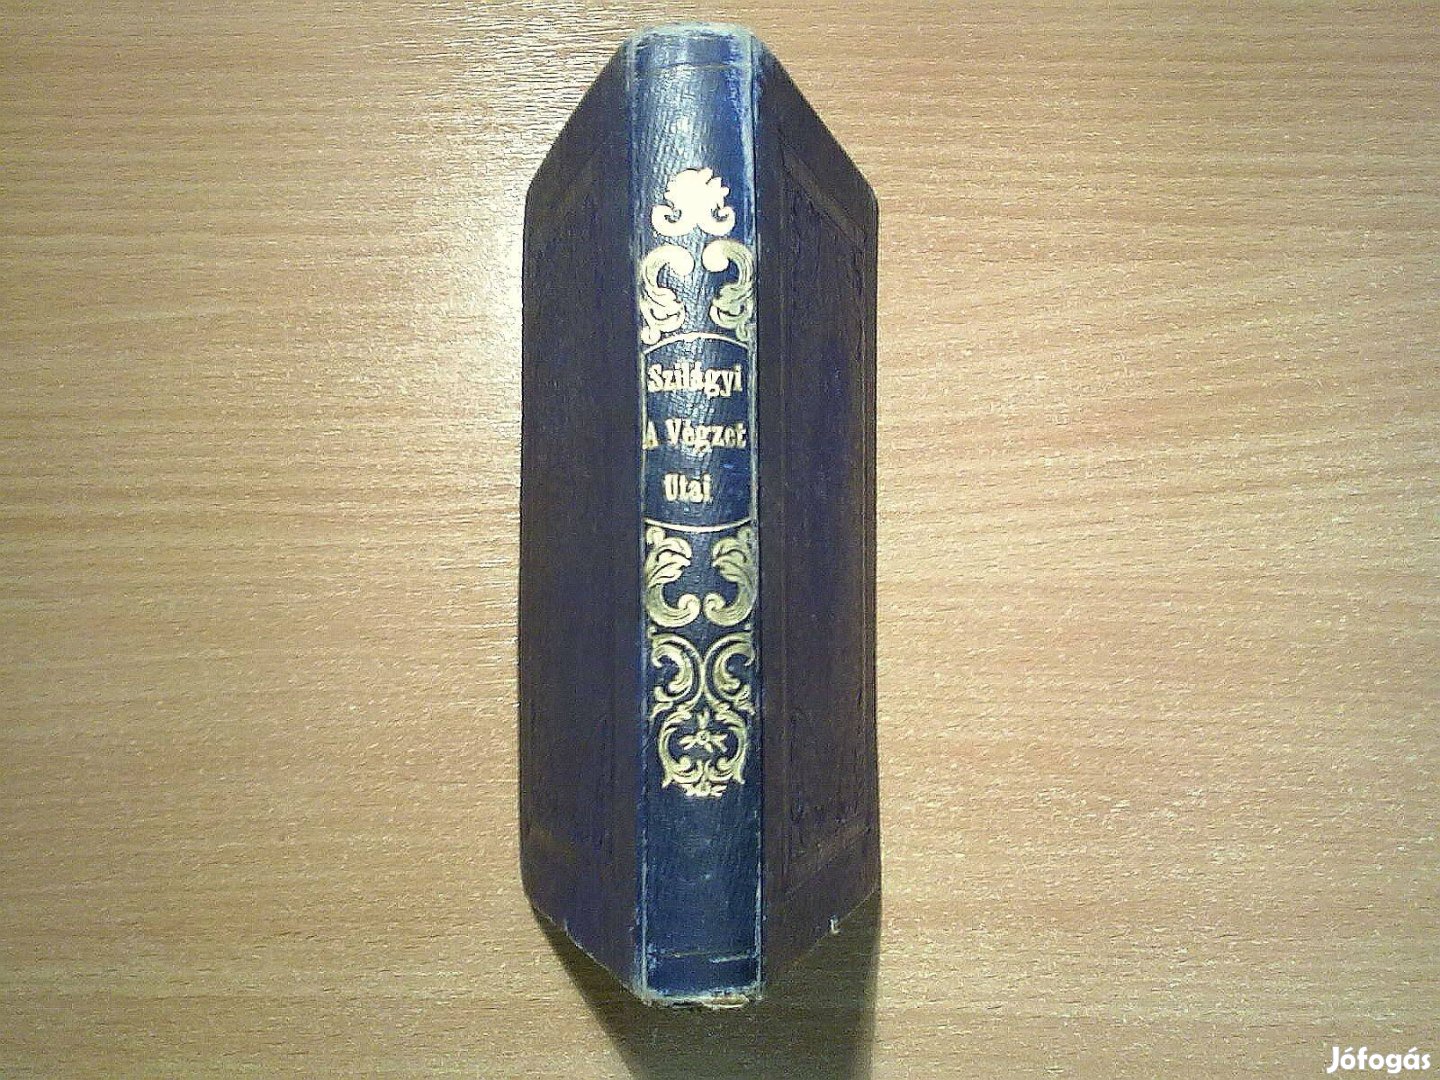 Szilágyi Virgil munkái- A végzet utai (1855) Aláírt példány, Első kiad